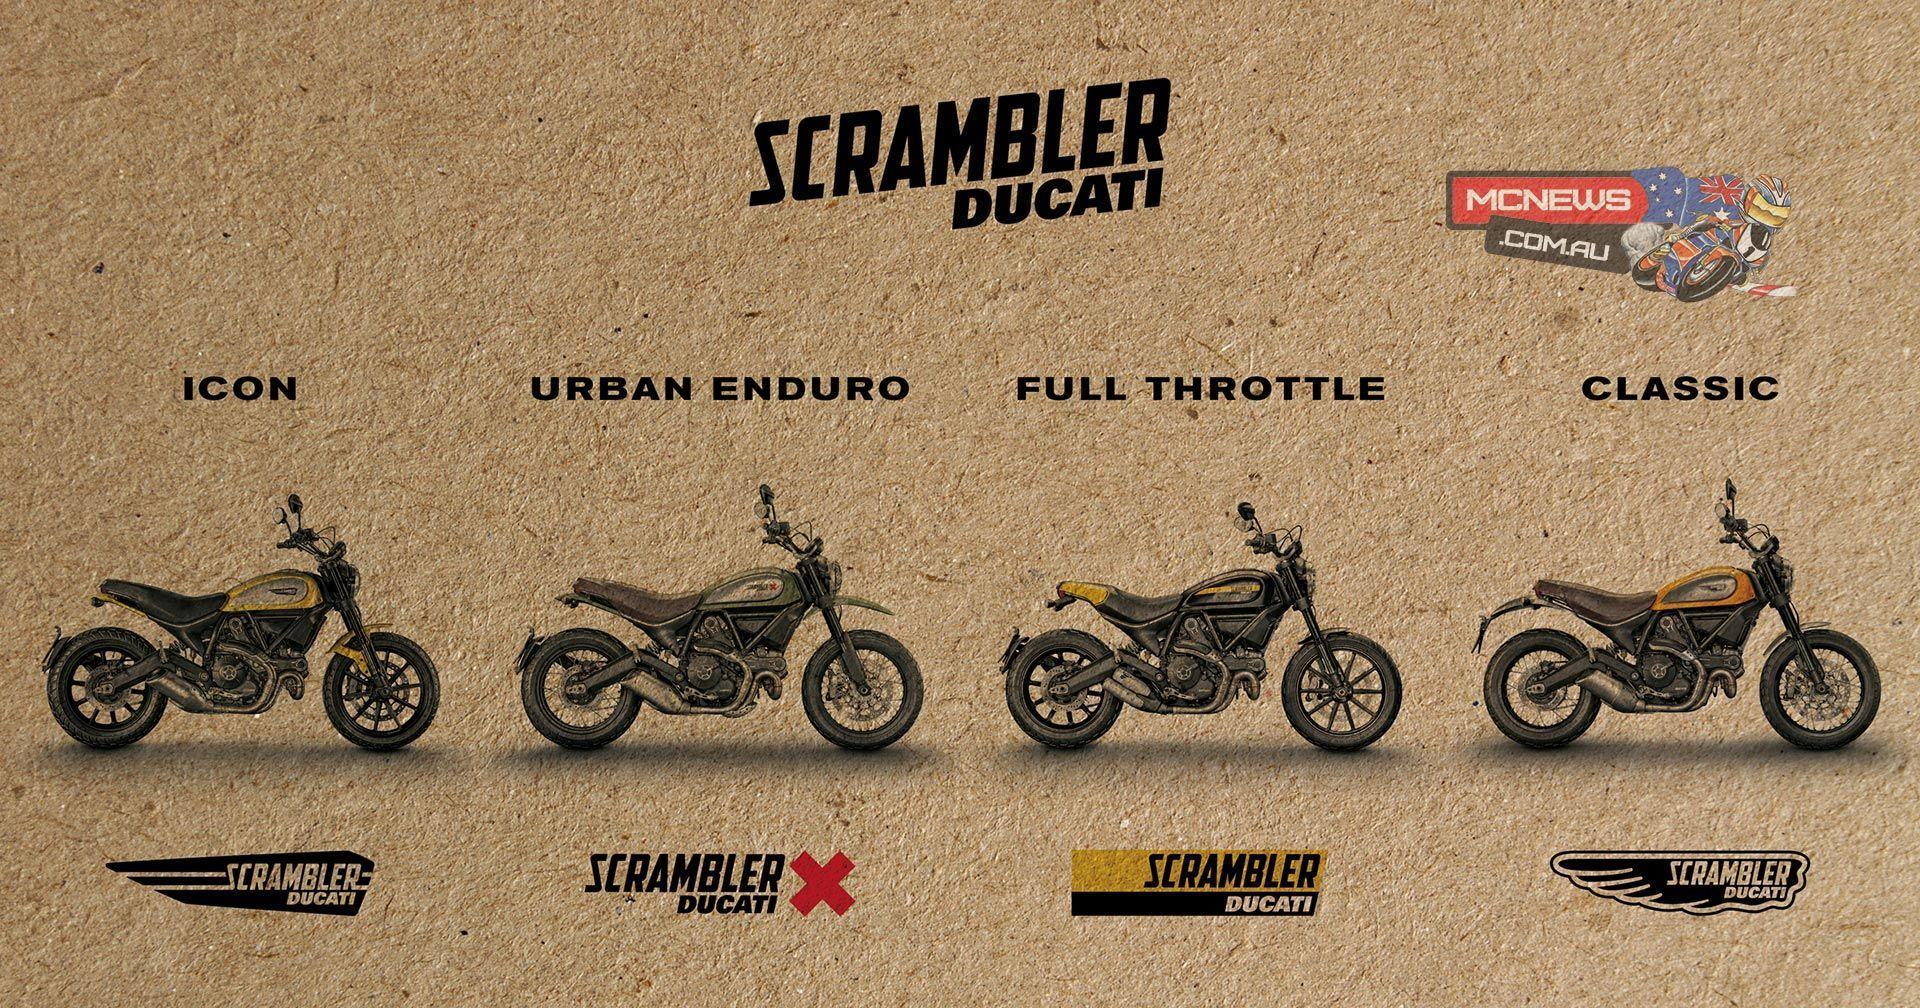 Ducati Scrambler Full Details